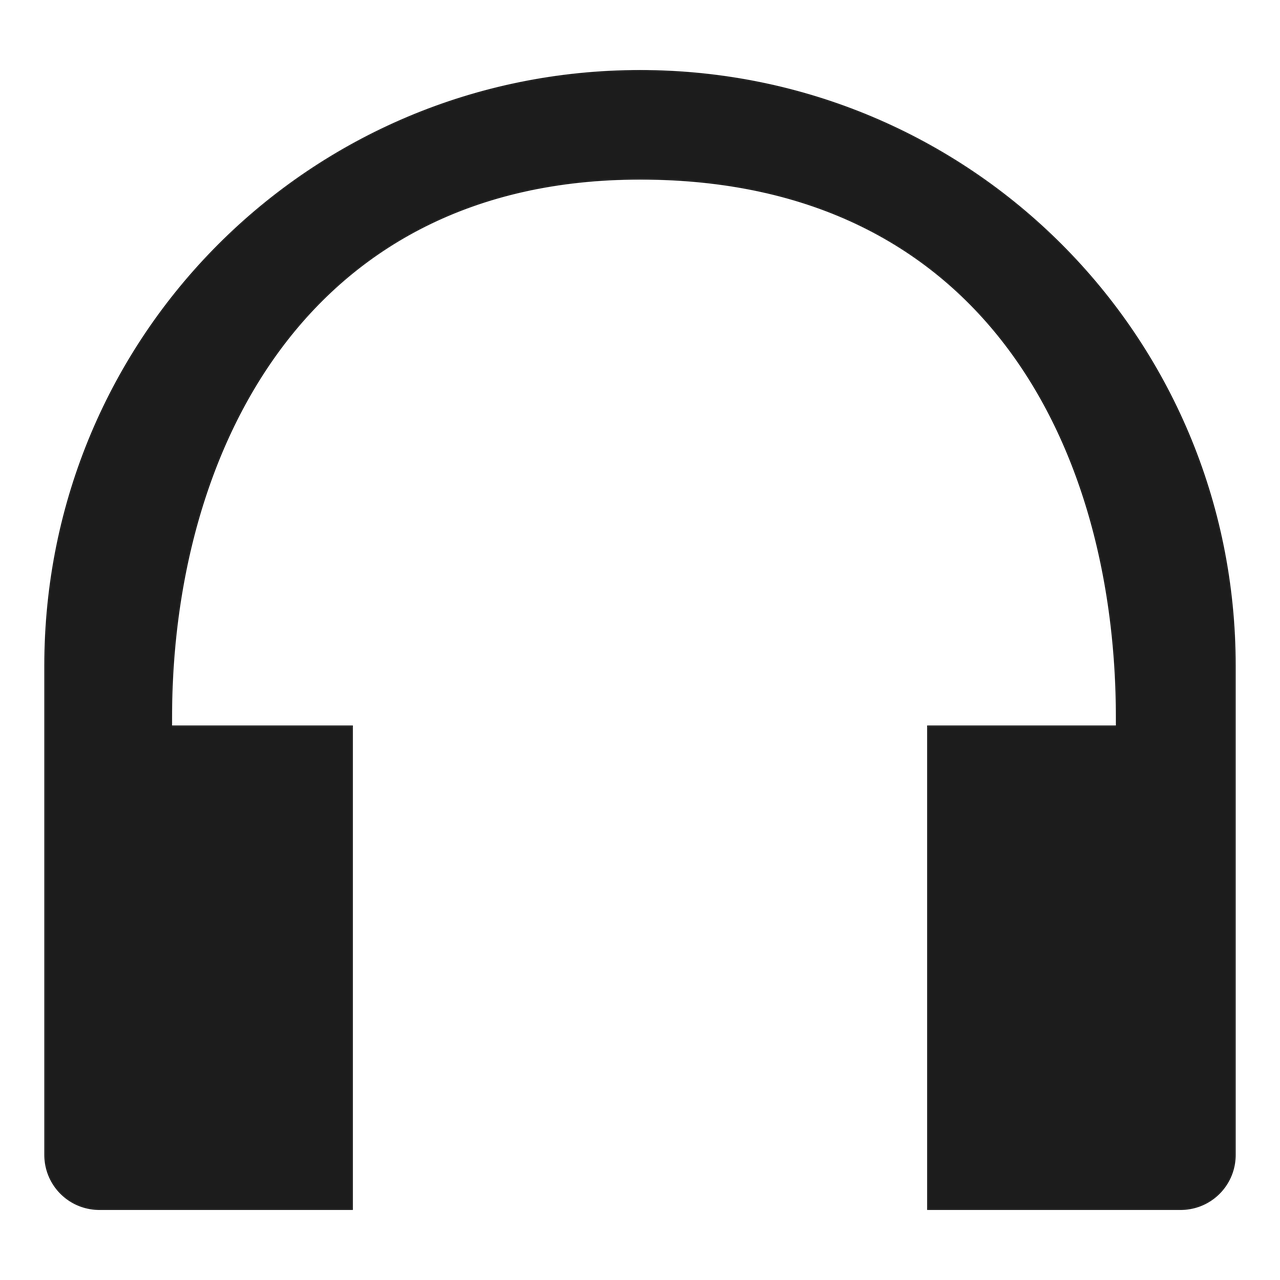 headphones icon black free photo